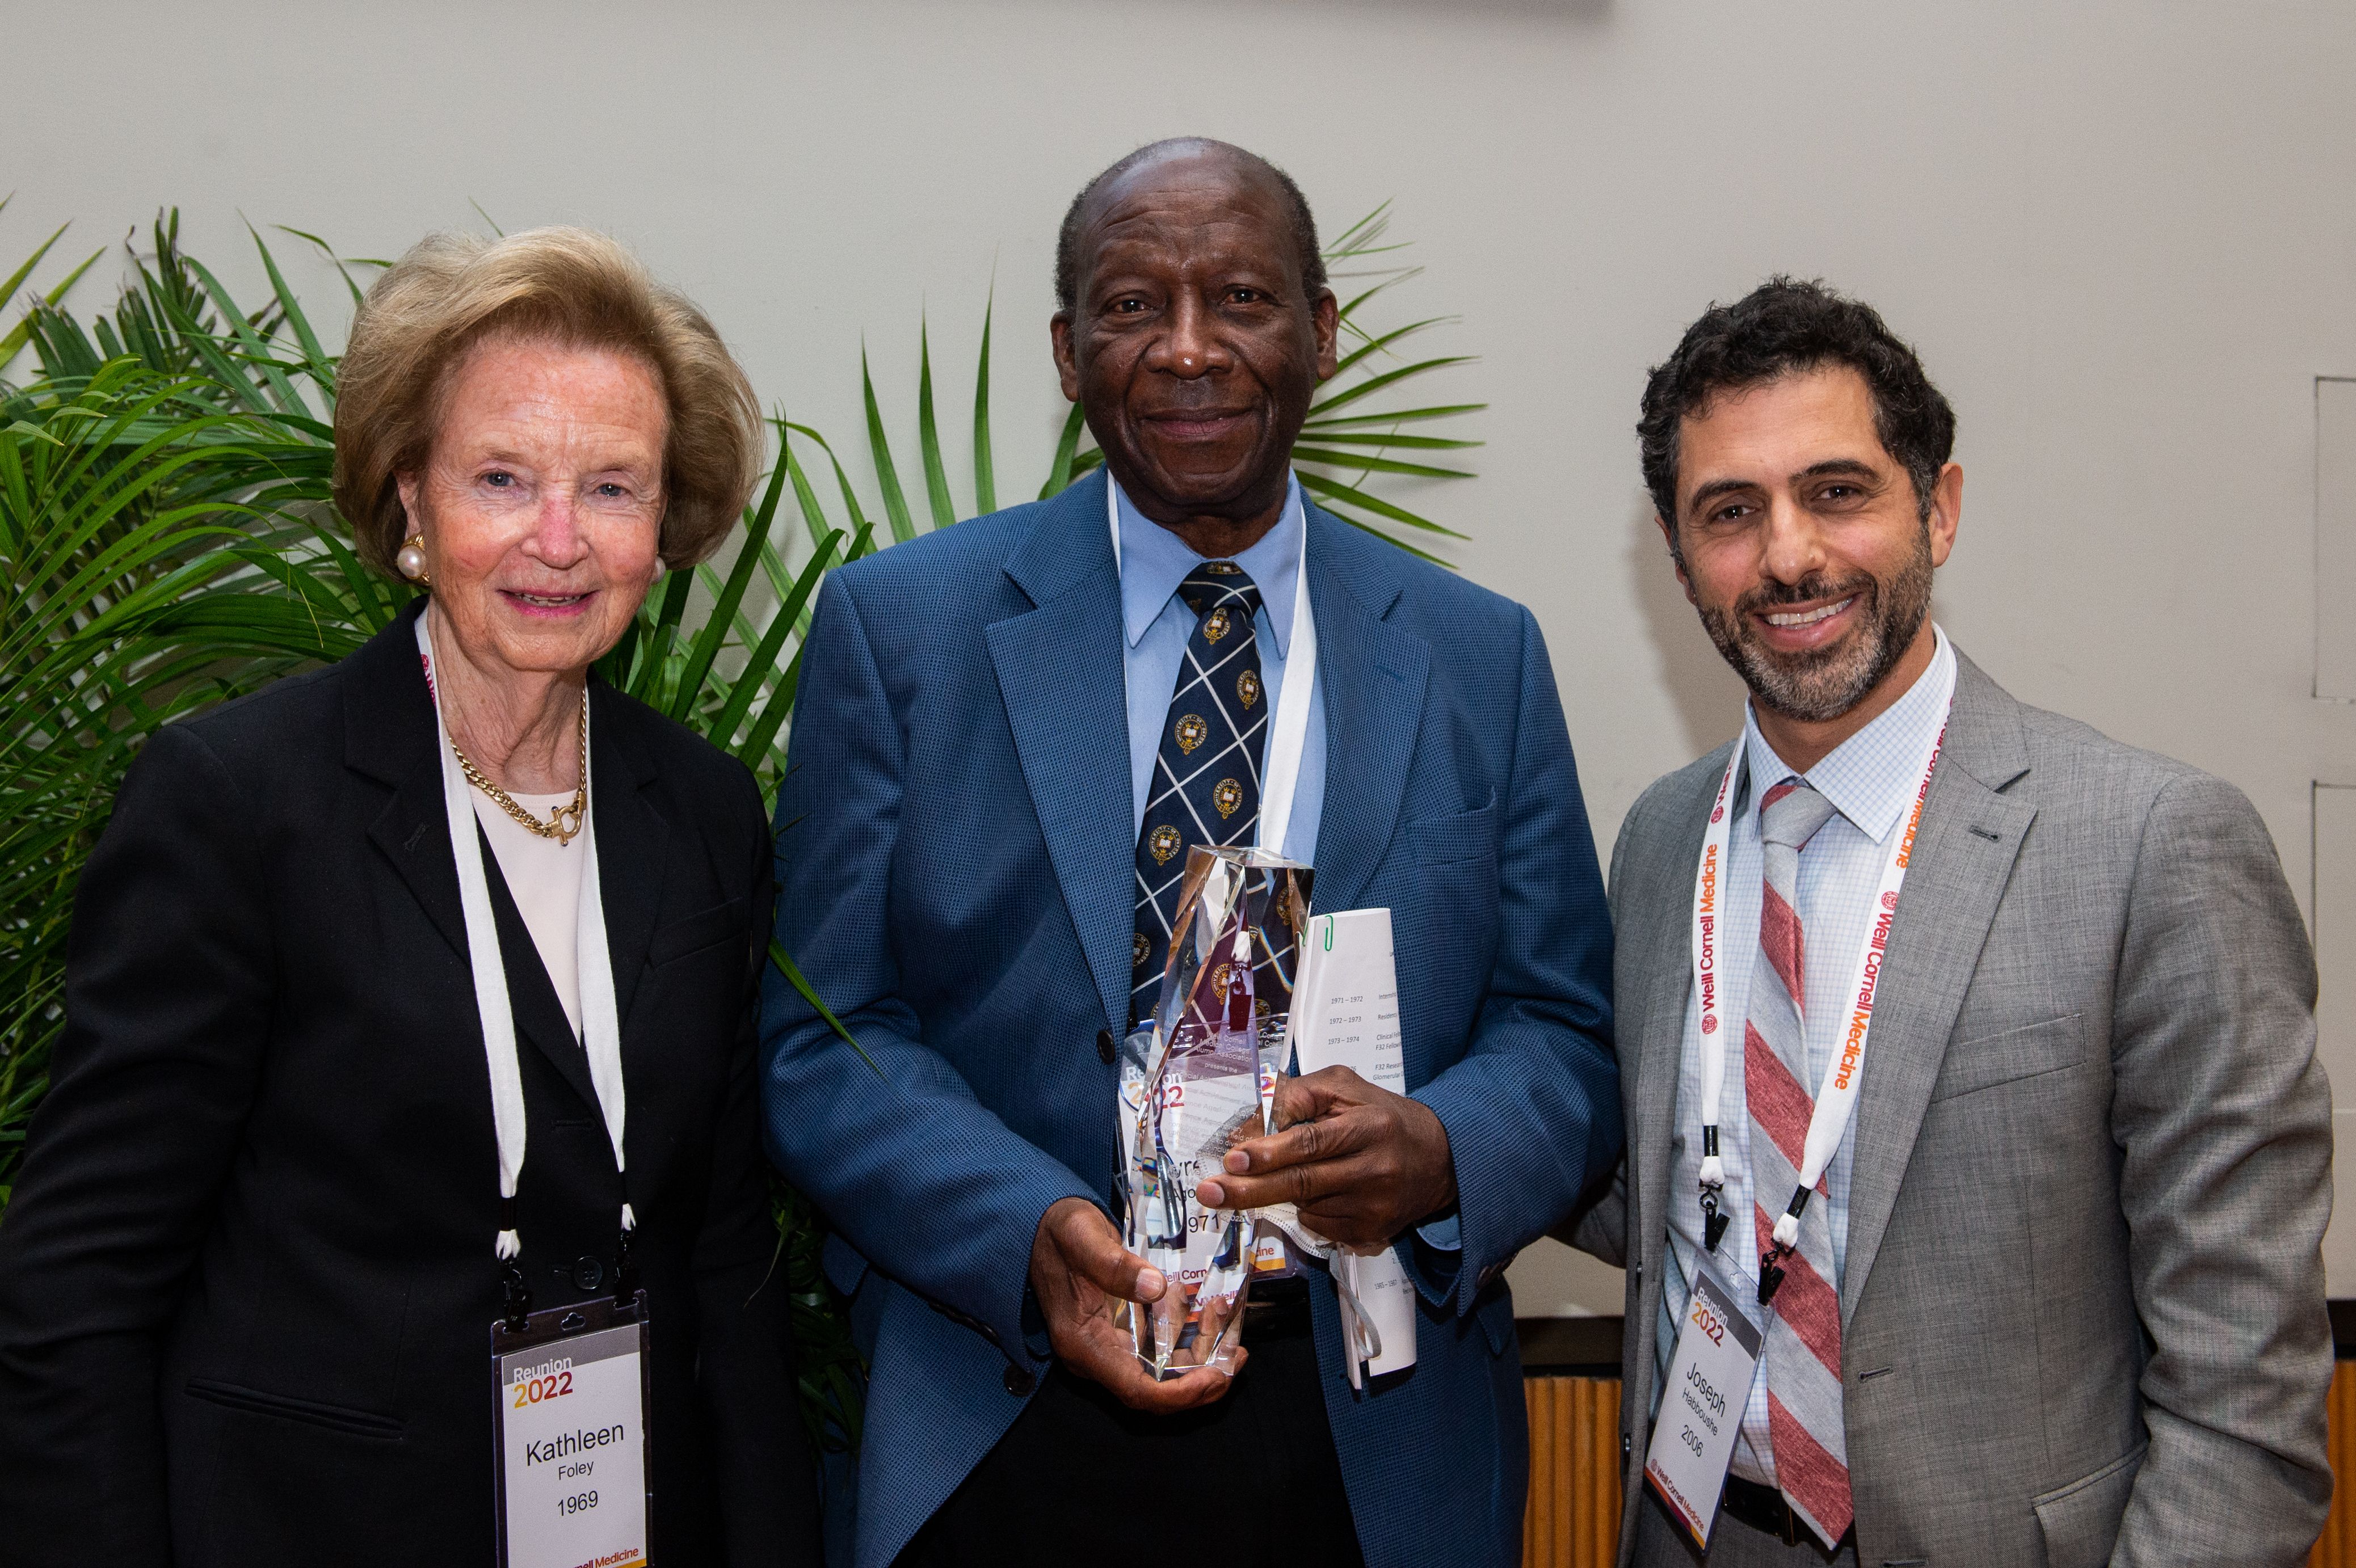 Drs. Kathleen Foley, Lawrence Agodoa and Joseph Habboushe